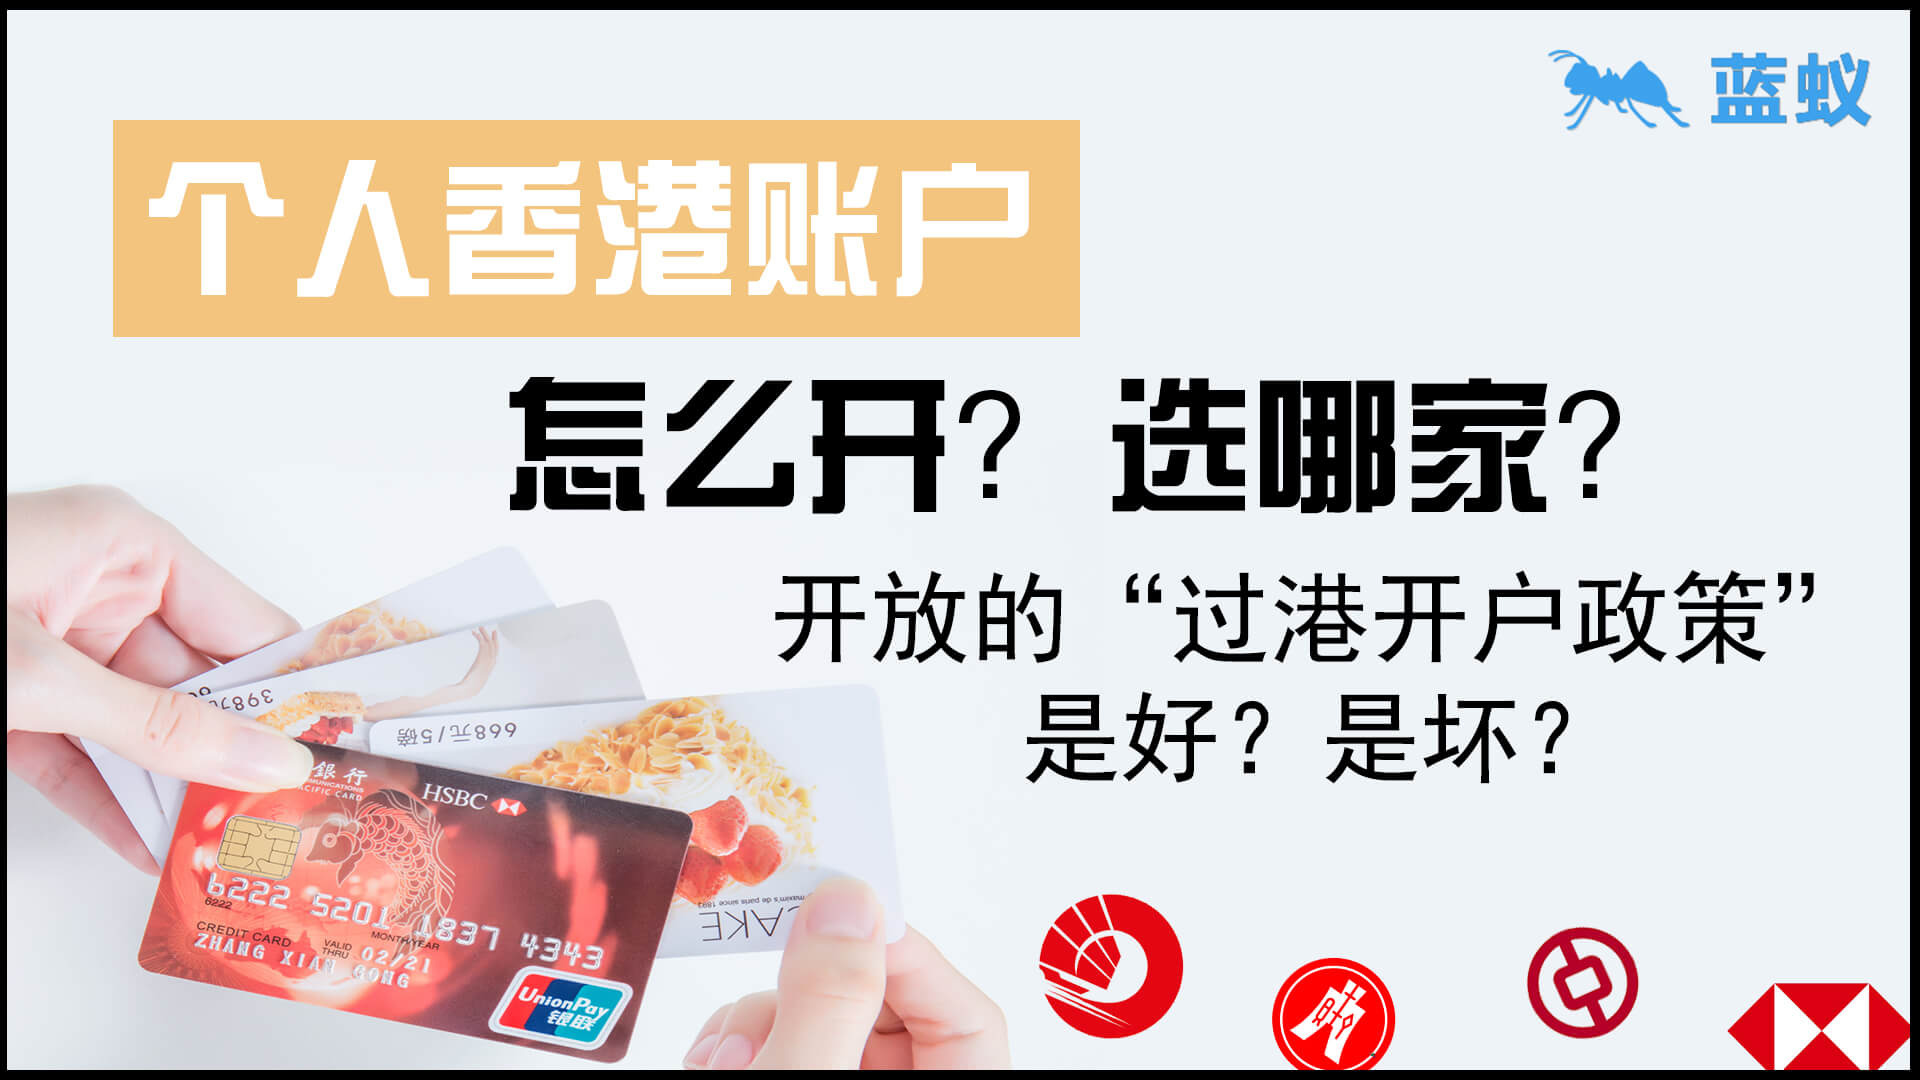 香港各大银行开放“过港开户政策”是好是坏？香港个人账户开设该选择哪家银行？